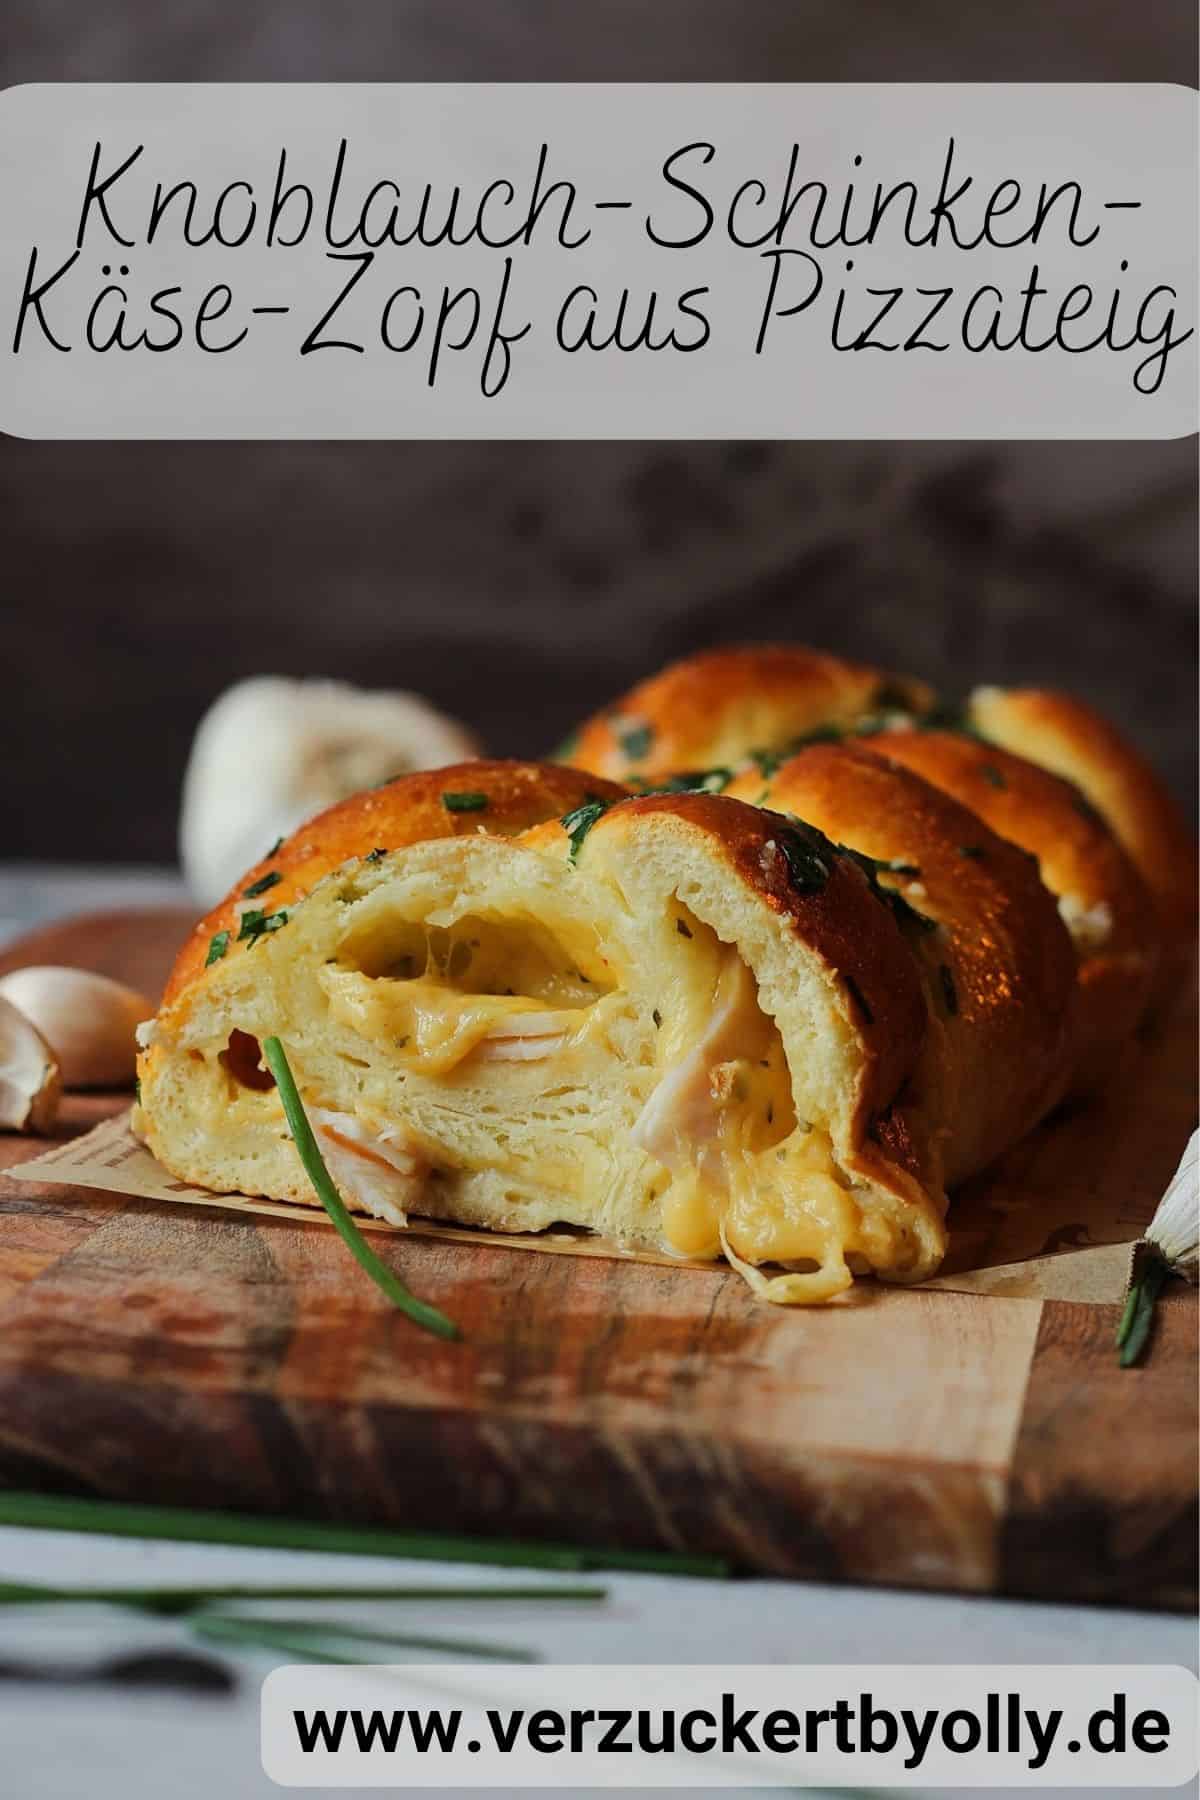 Pin zu Pinterest: Knoblauch-Schinken-Käse-Zopf aus Pizzateig